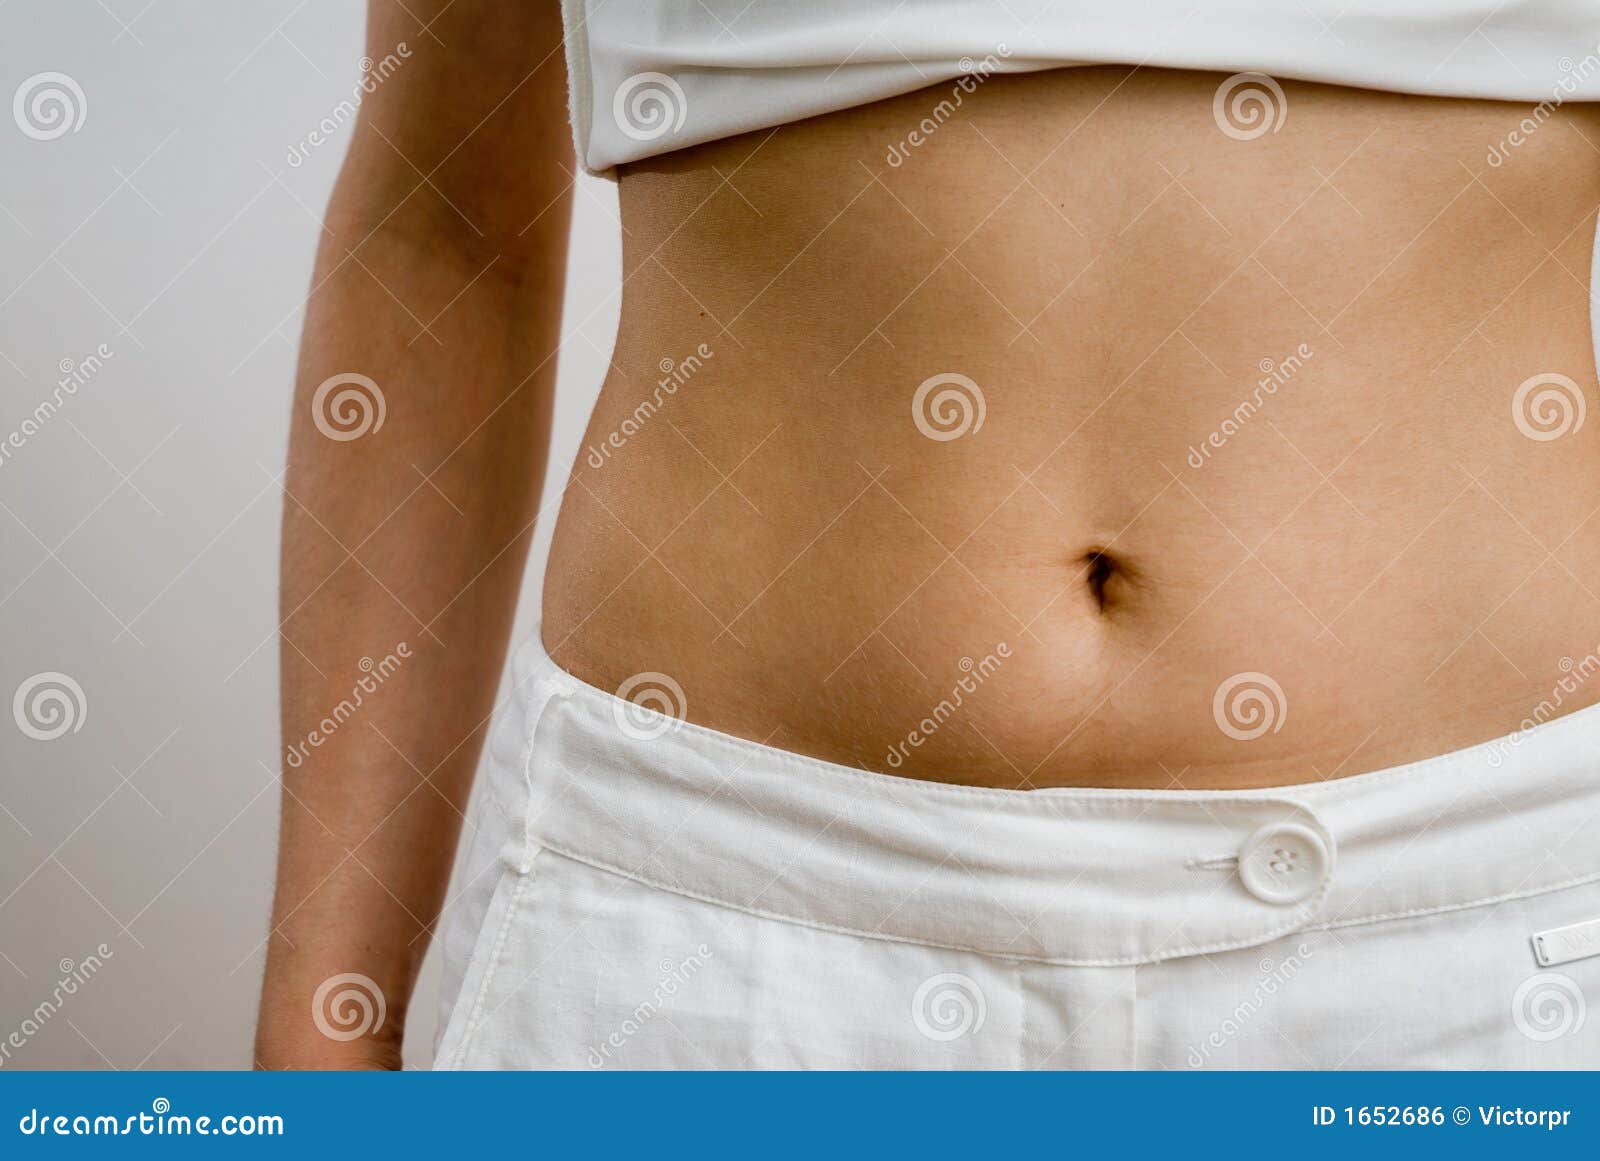 женский живот стоковое фото. изображение насчитывающей диеты - 1652686